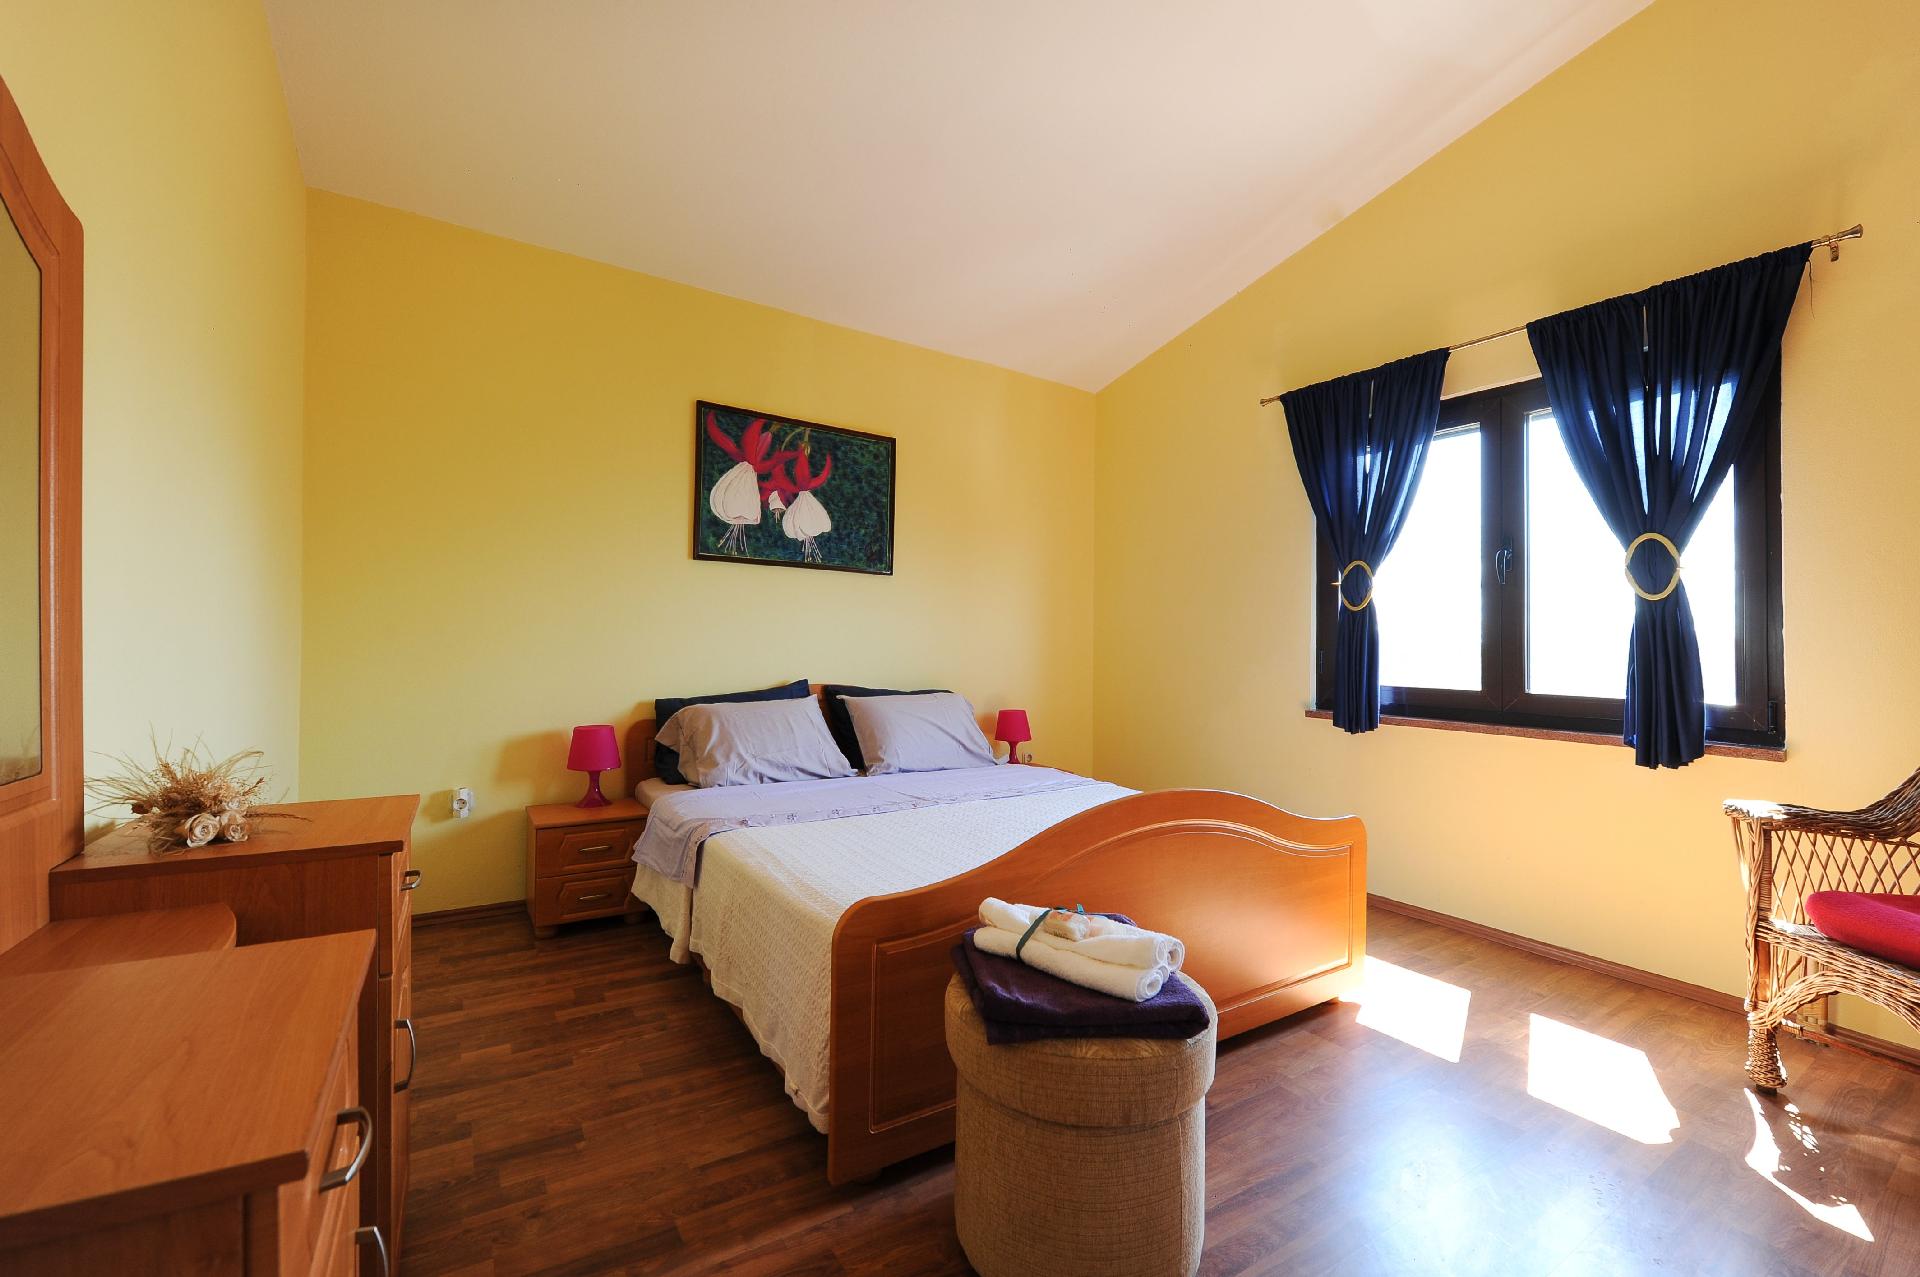 Ferienwohnung für 8 Personen ca. 194 m²  Ferienhaus in Dalmatien